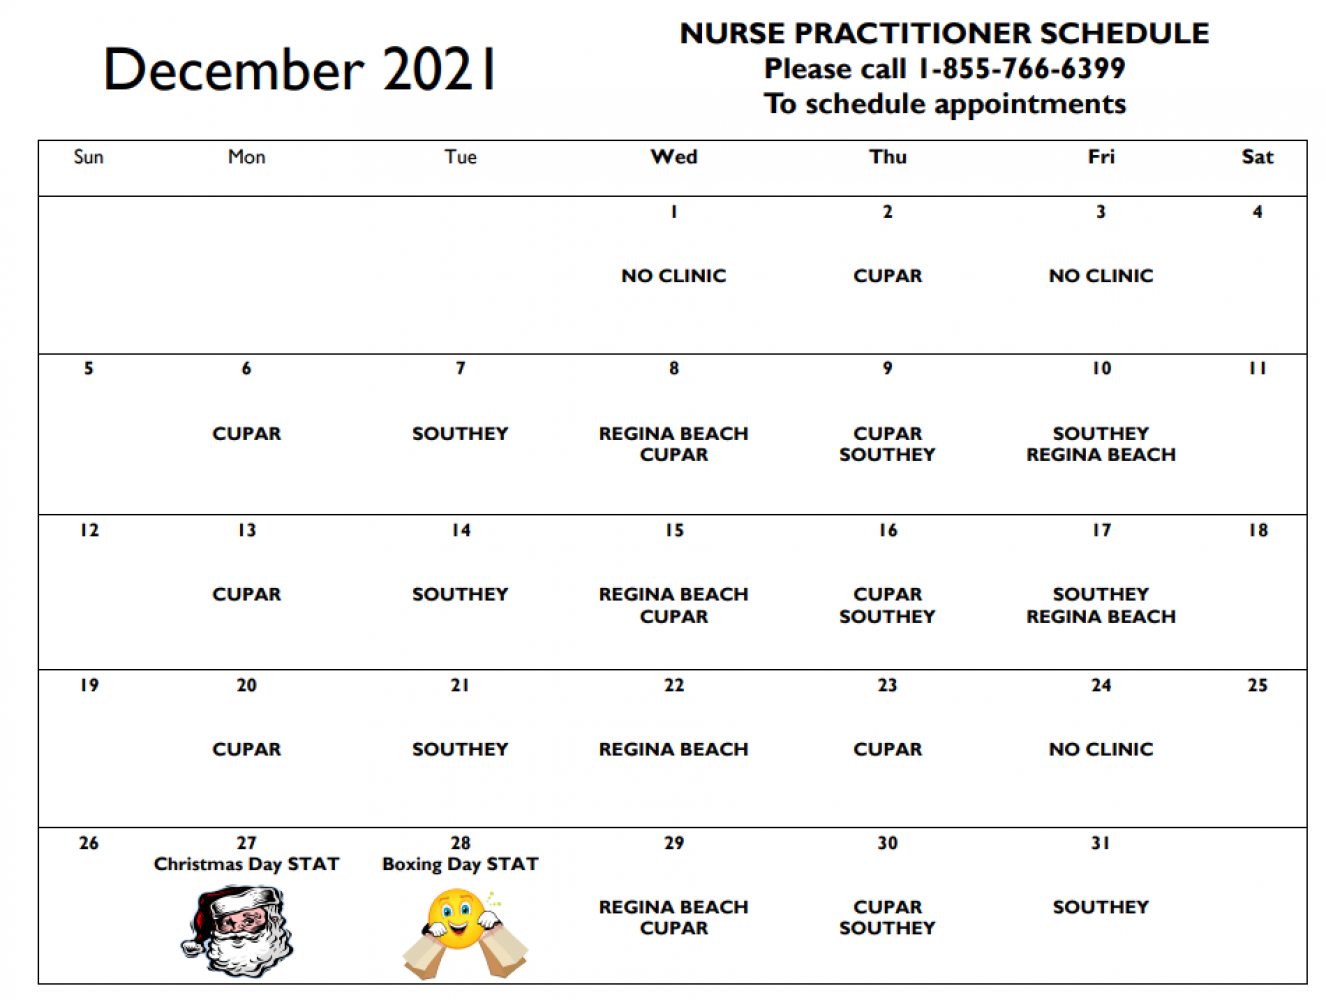 No Nurse Practitioner Dec 1 & 3